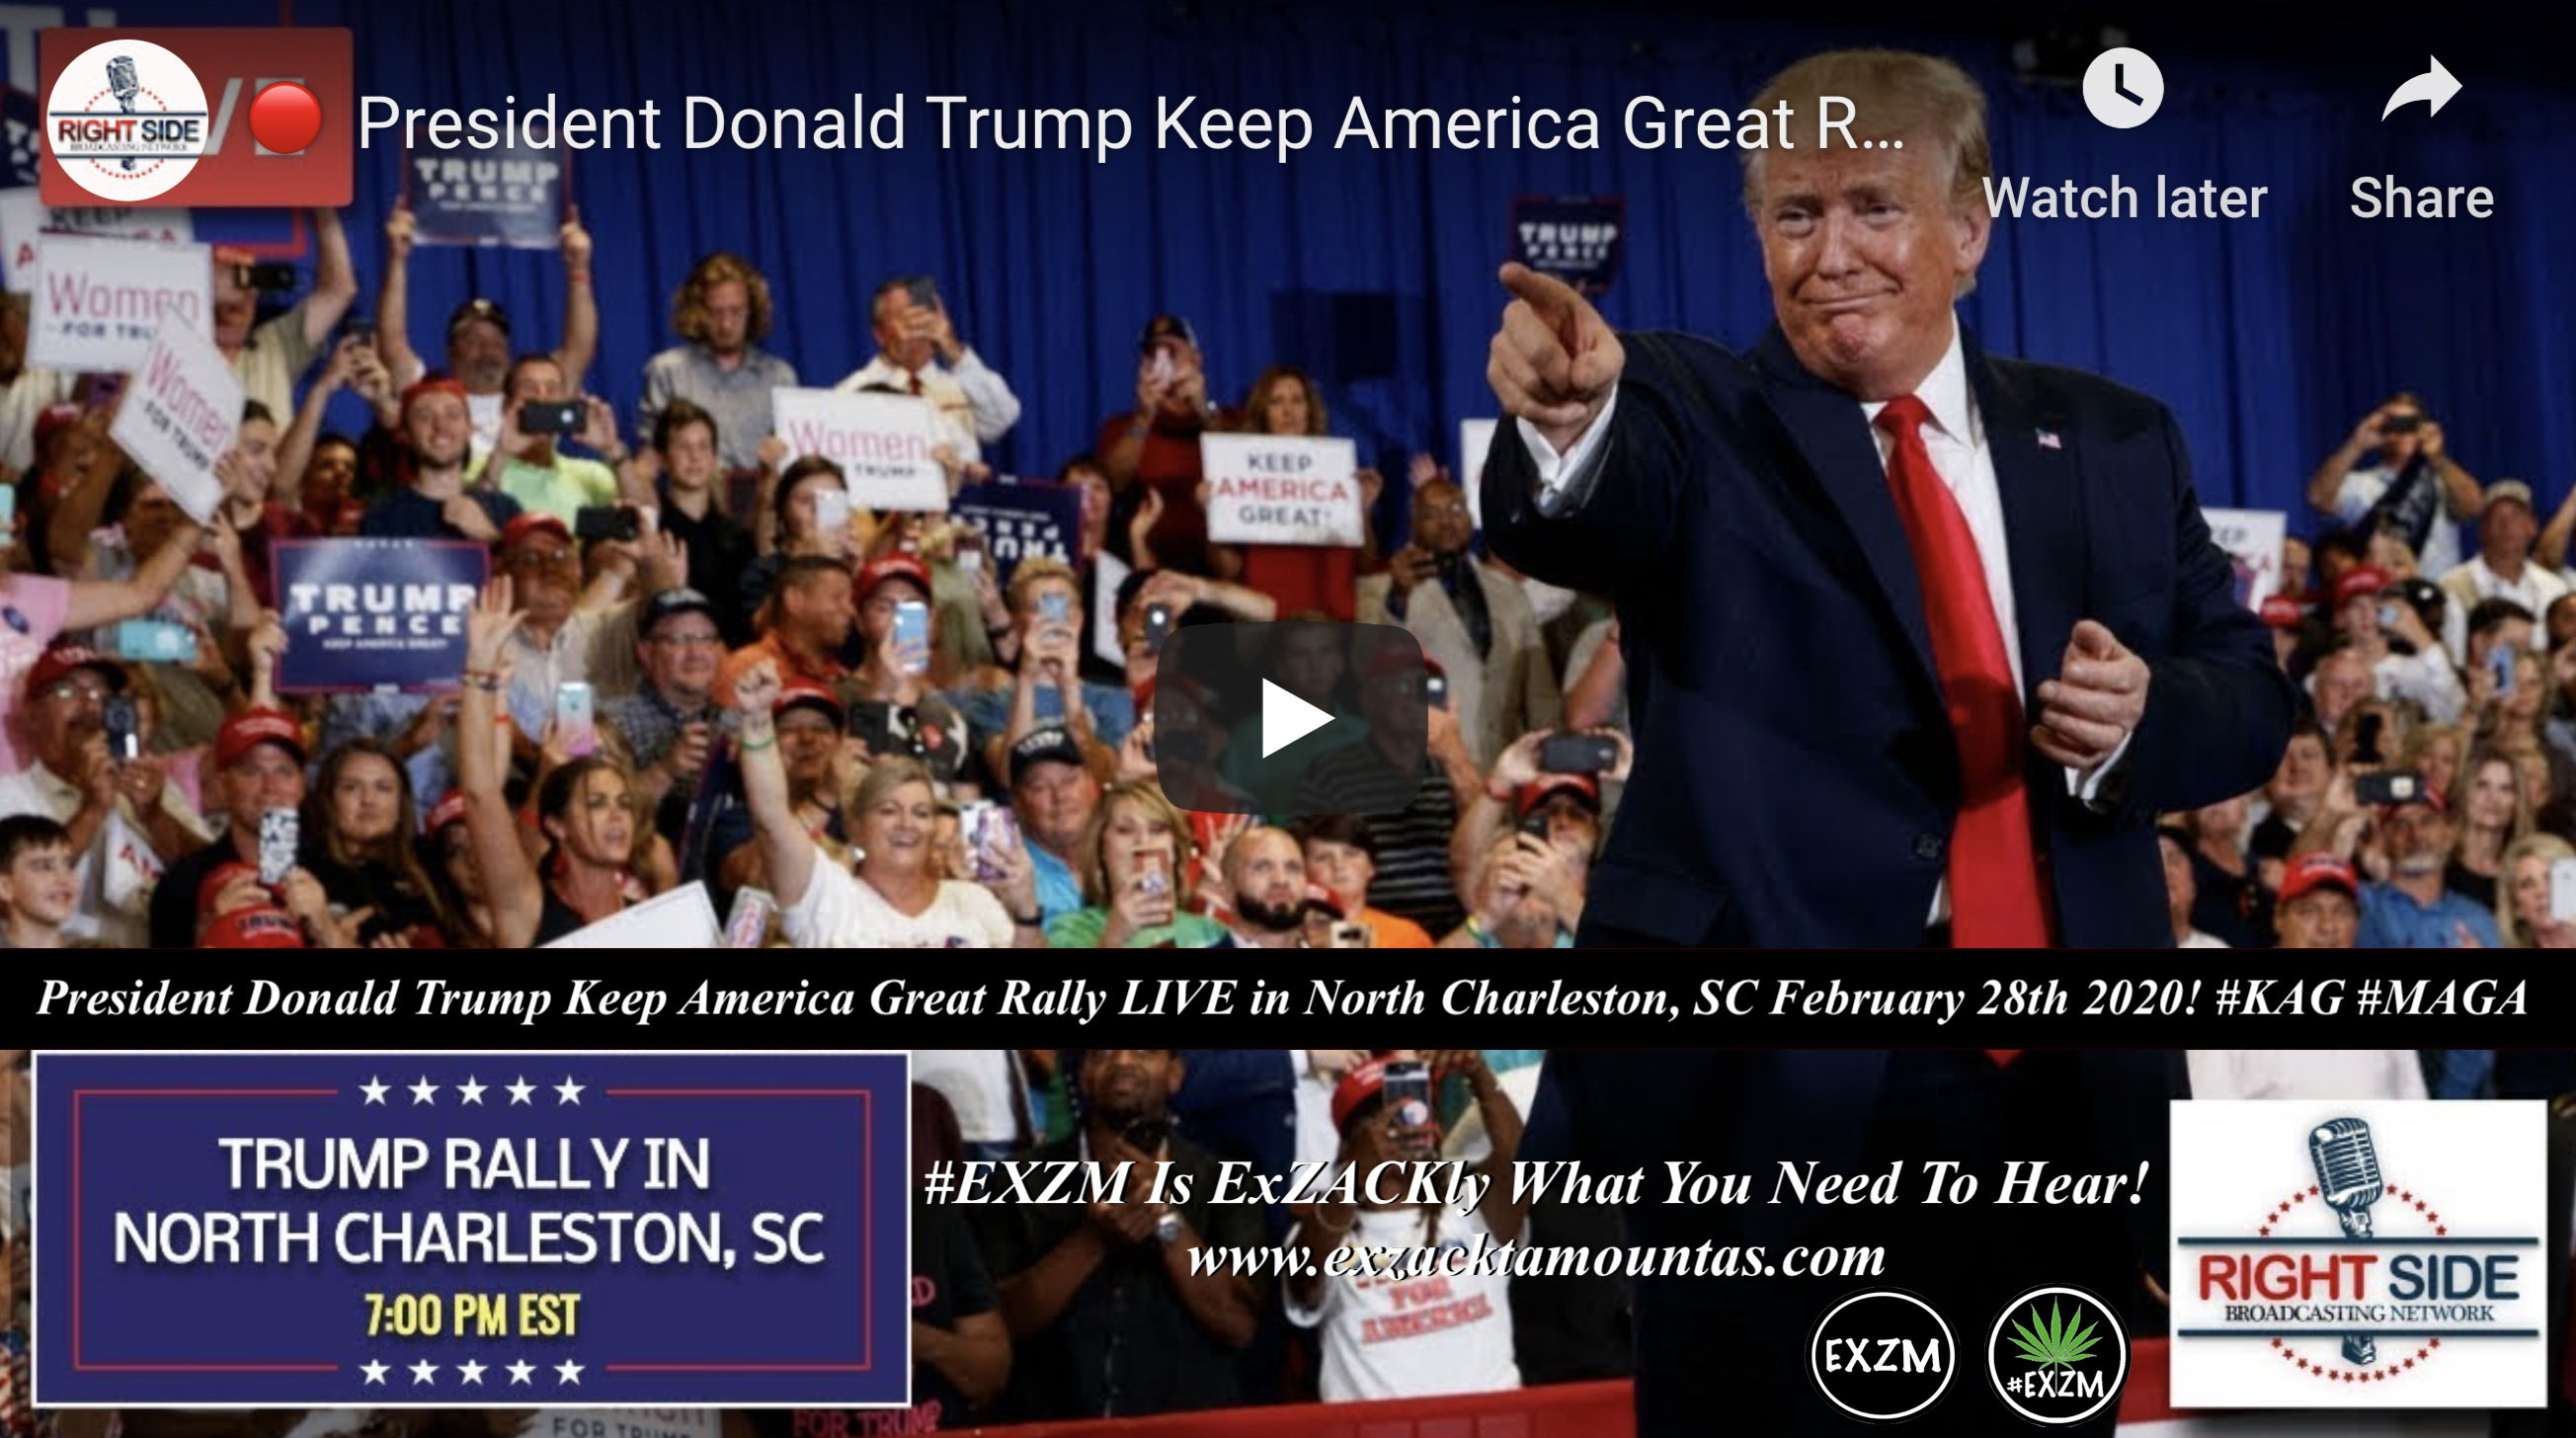 Donald Trump KAG MAGA North Charleston, SC Feb 28th 2020